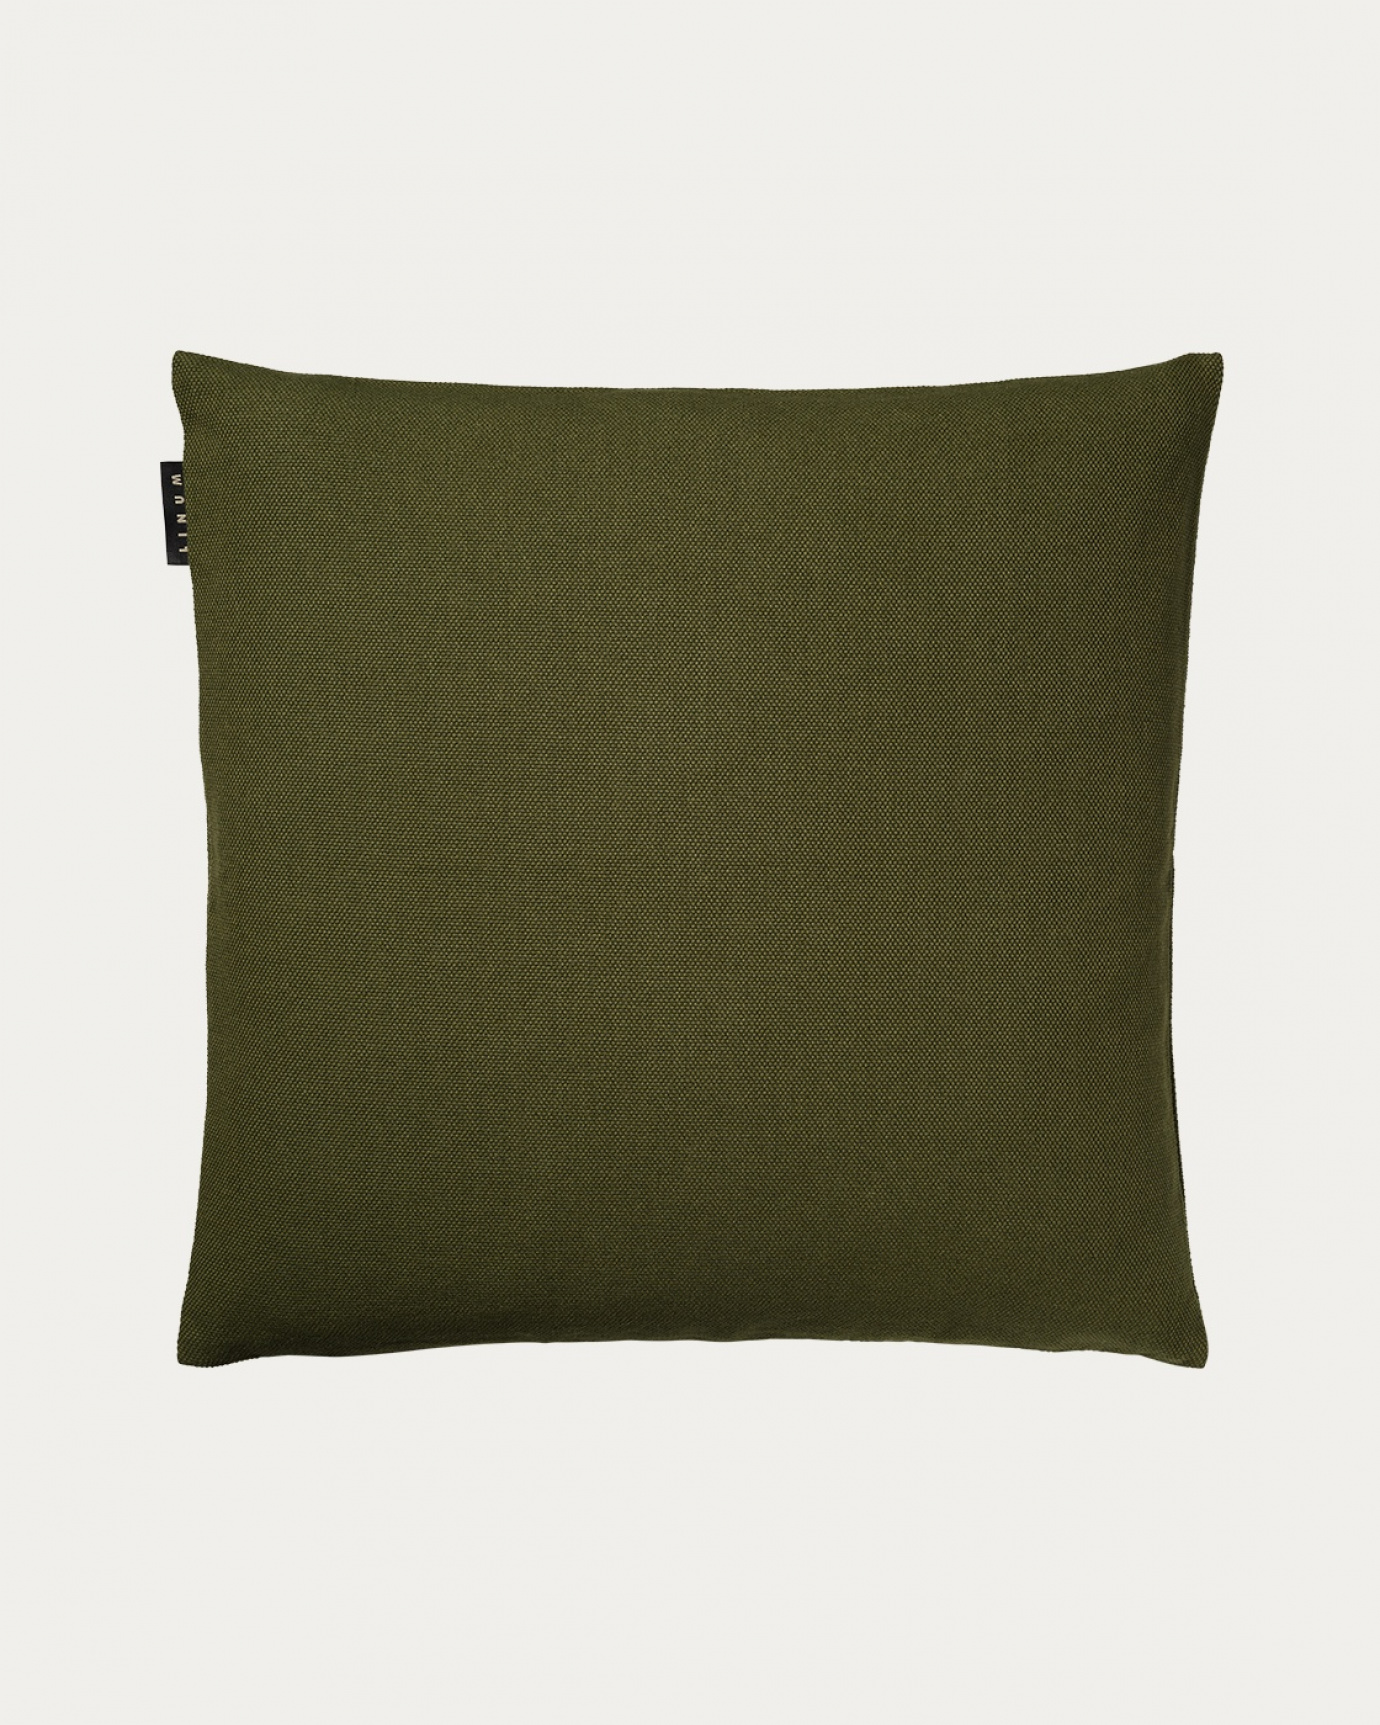 Immagine prodotto verde oliva scuro PEPPER copricuscini in morbido cotone di LINUM DESIGN. Facile da lavare e resistente per generazioni. Dimensioni 50x50 cm.